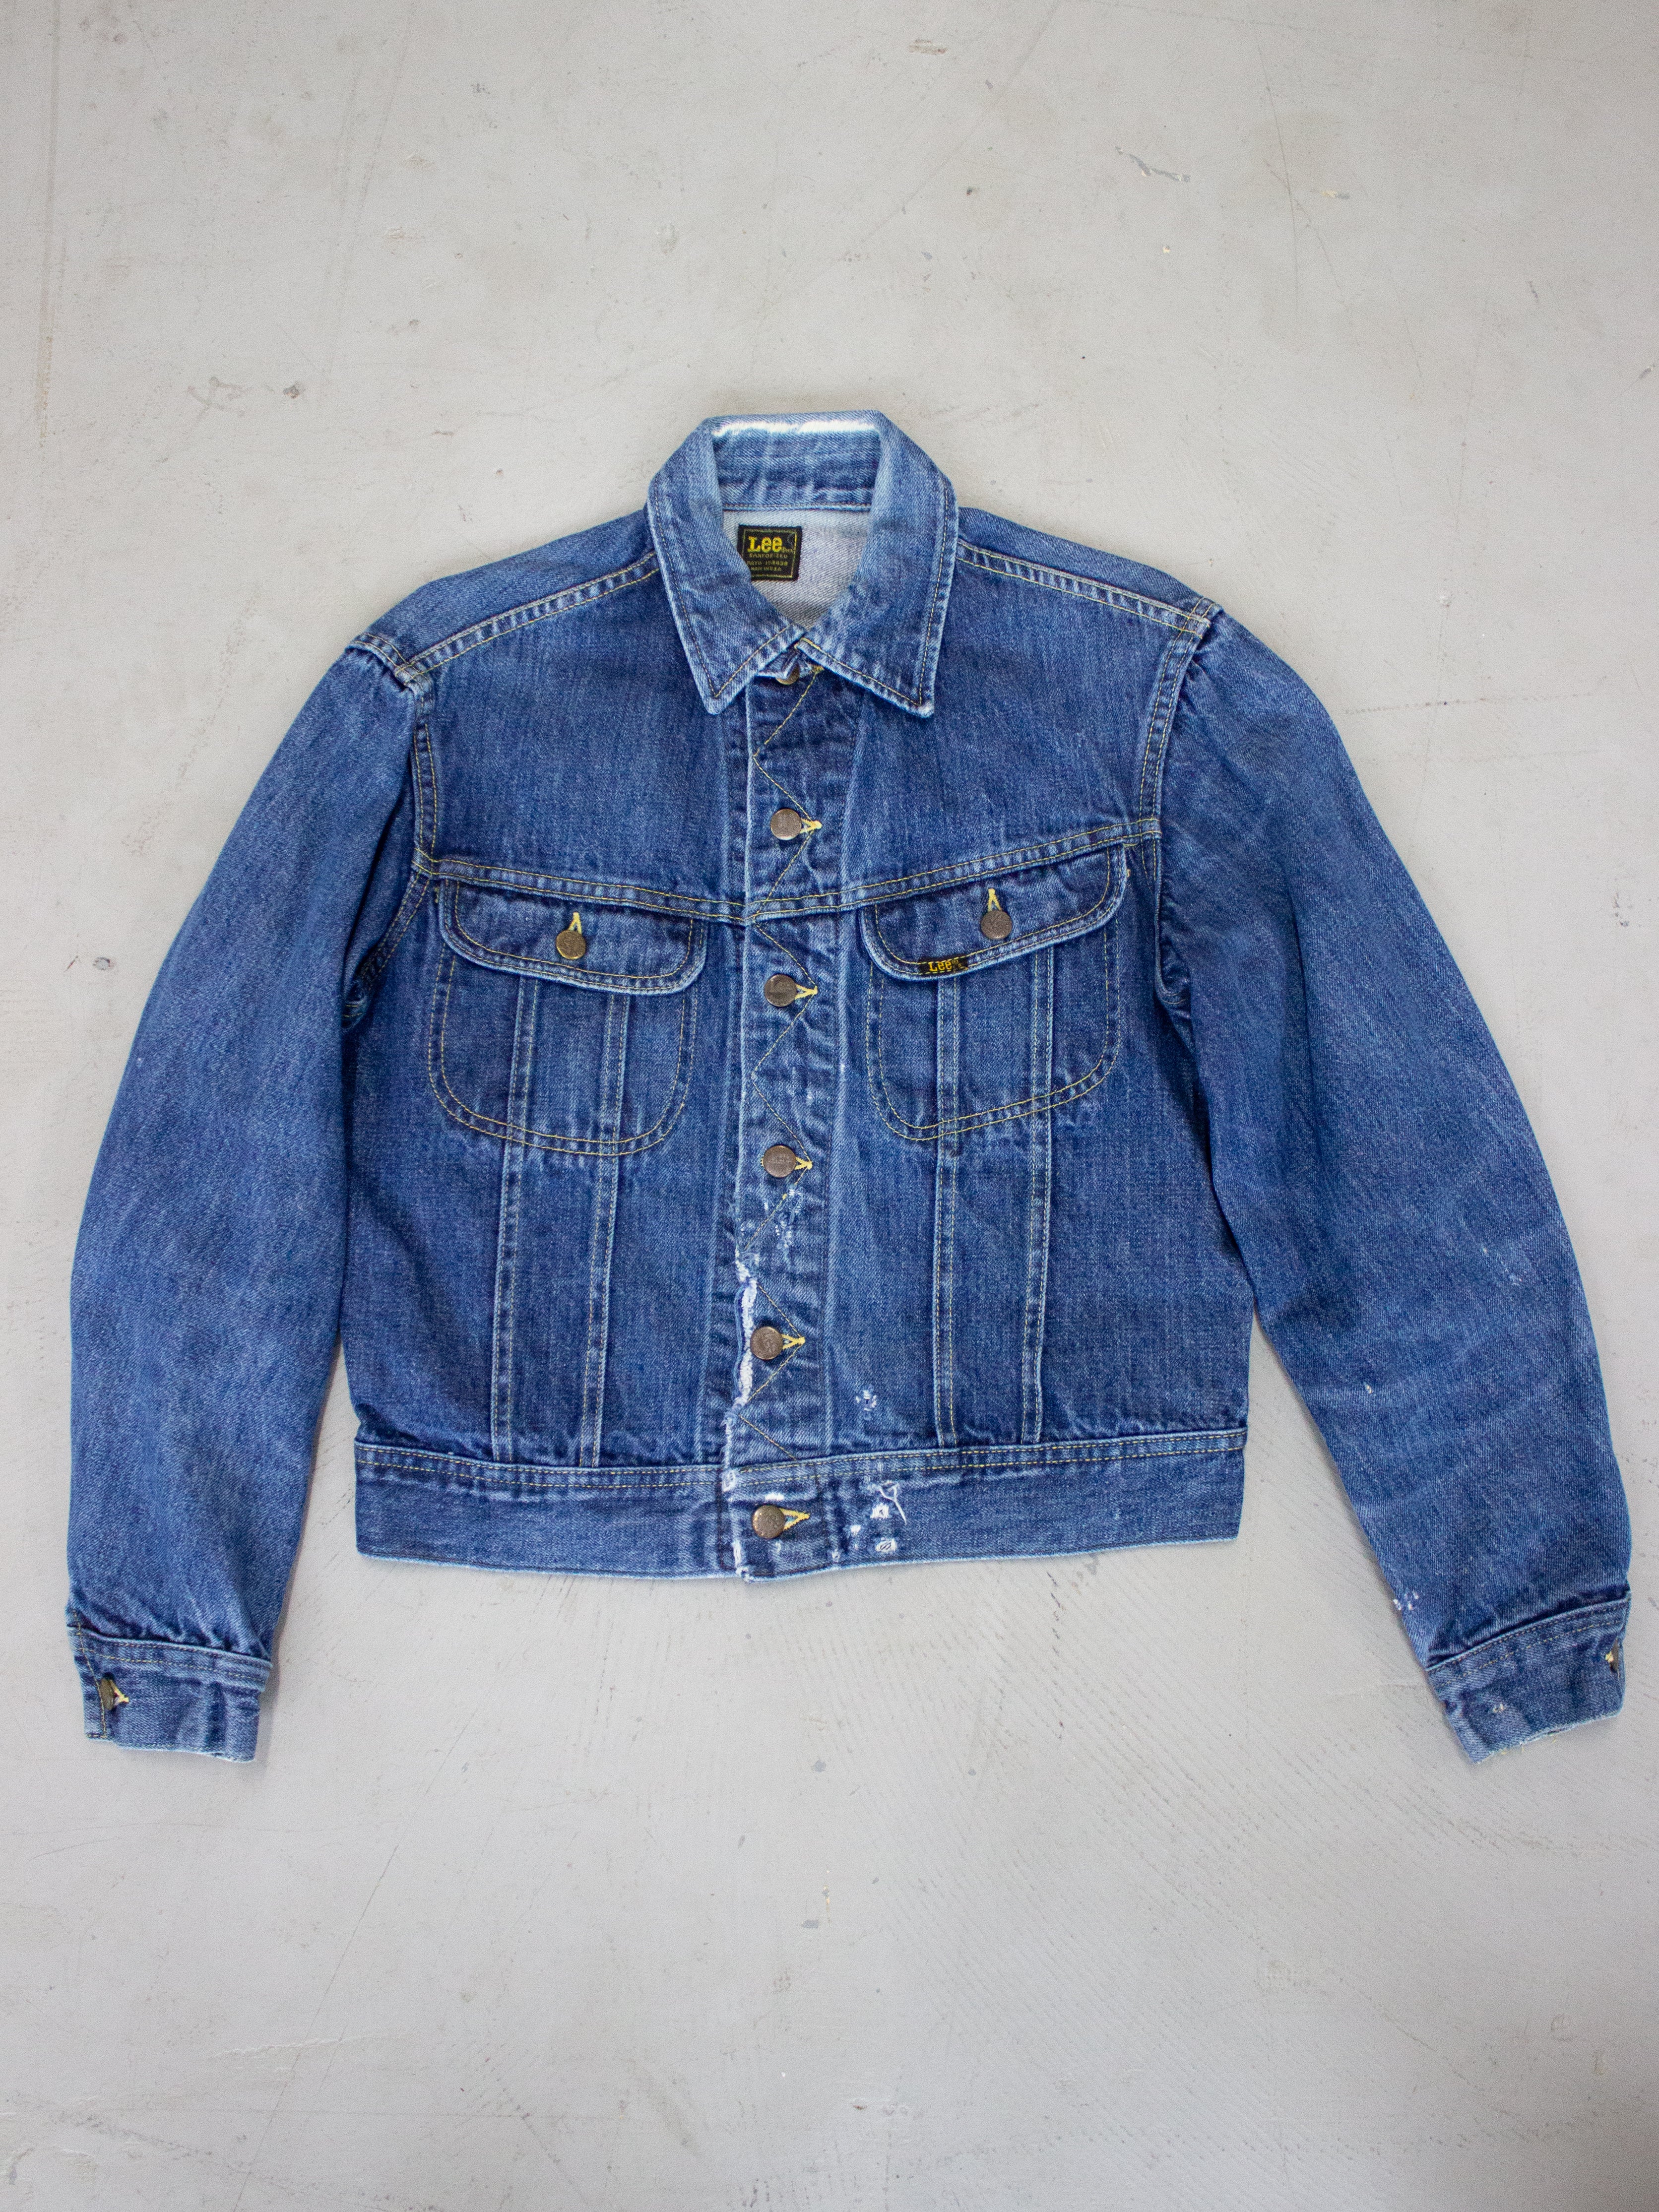 Vintage 1980's Lee Riders Jean Jacket Made In USA Dark Wash PATD-153438  (Large) – lacaravanevintage